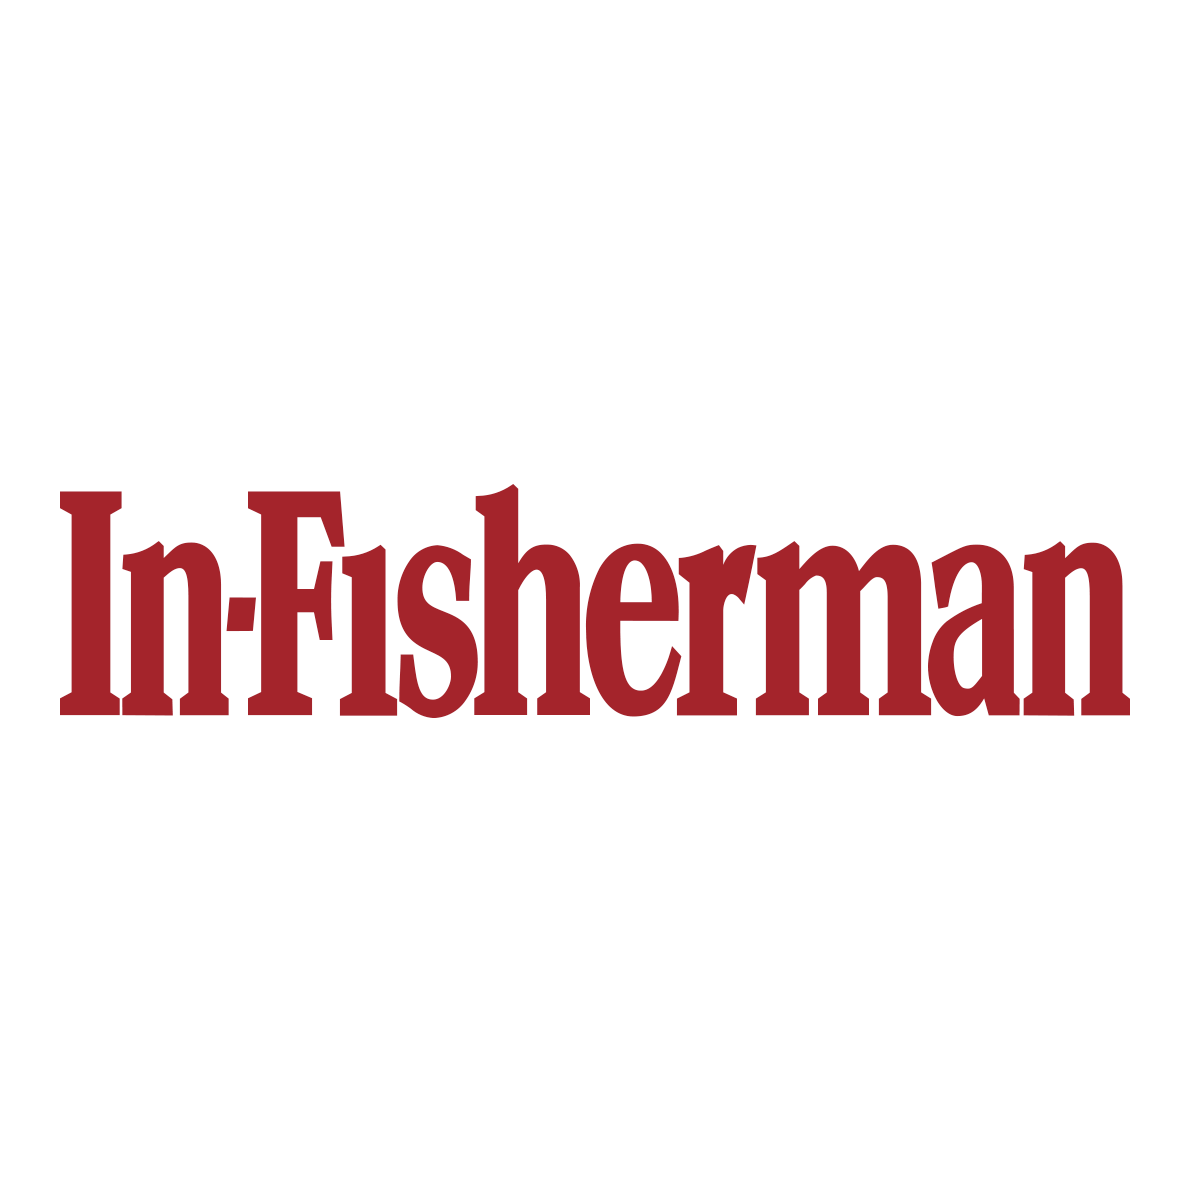 (c) In-fisherman.com